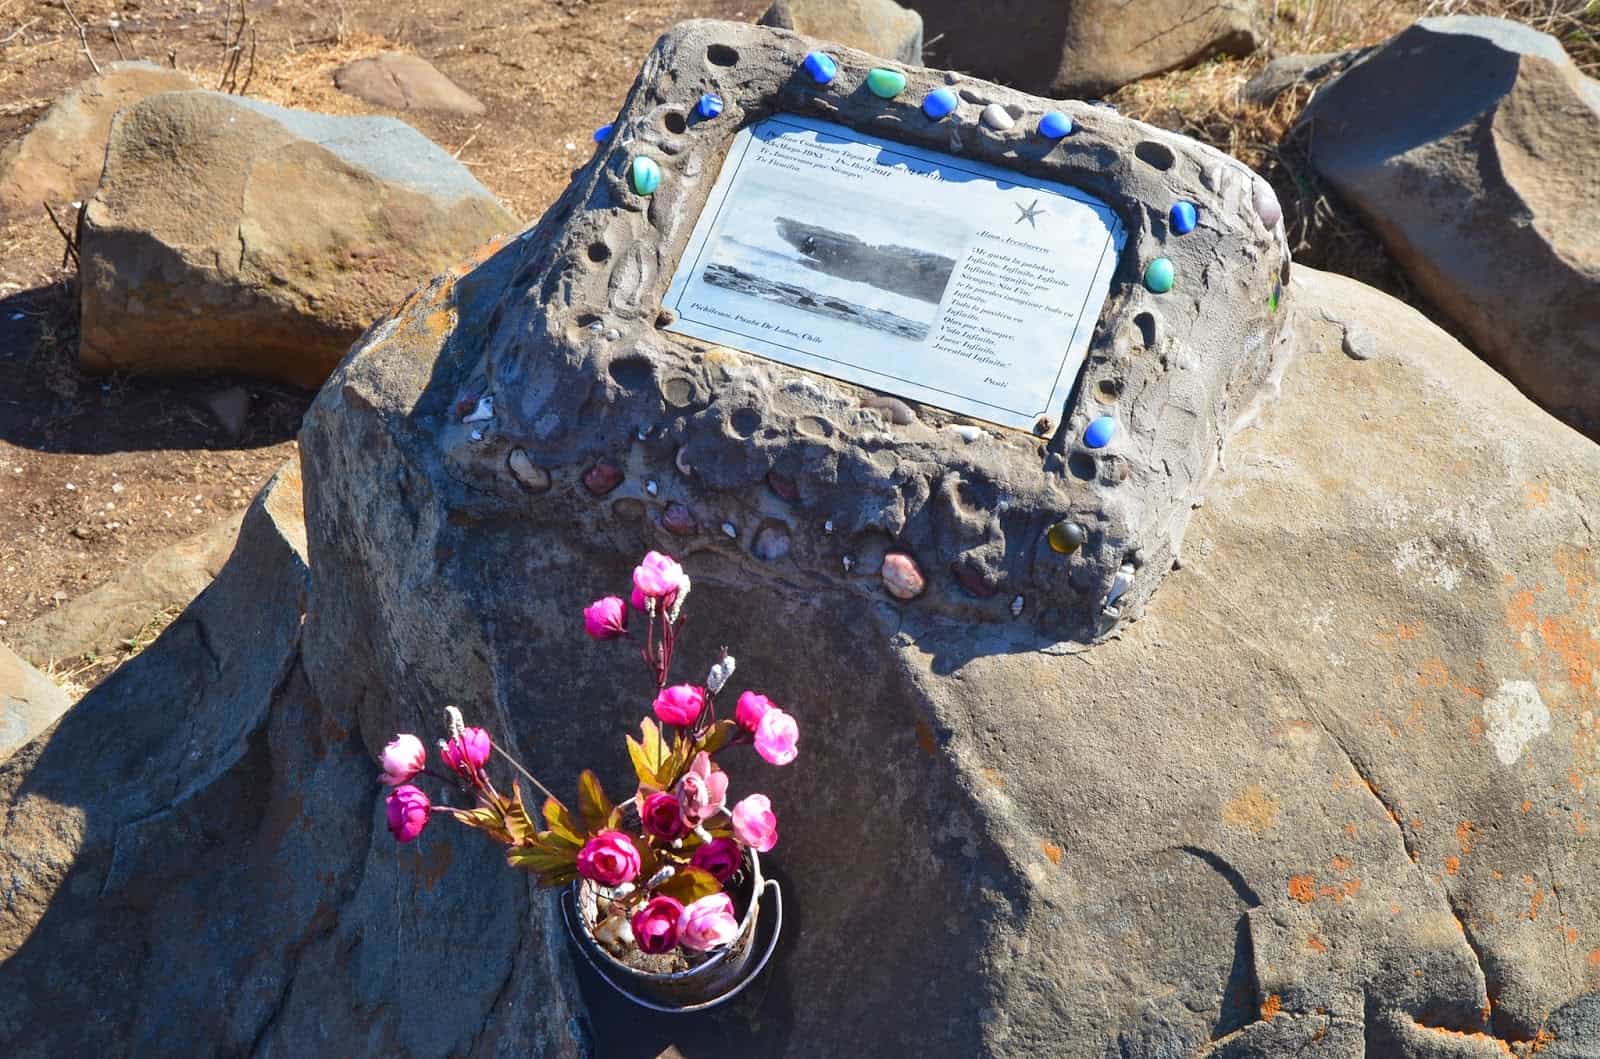 Surfer memorial in Pichilemu, Chile